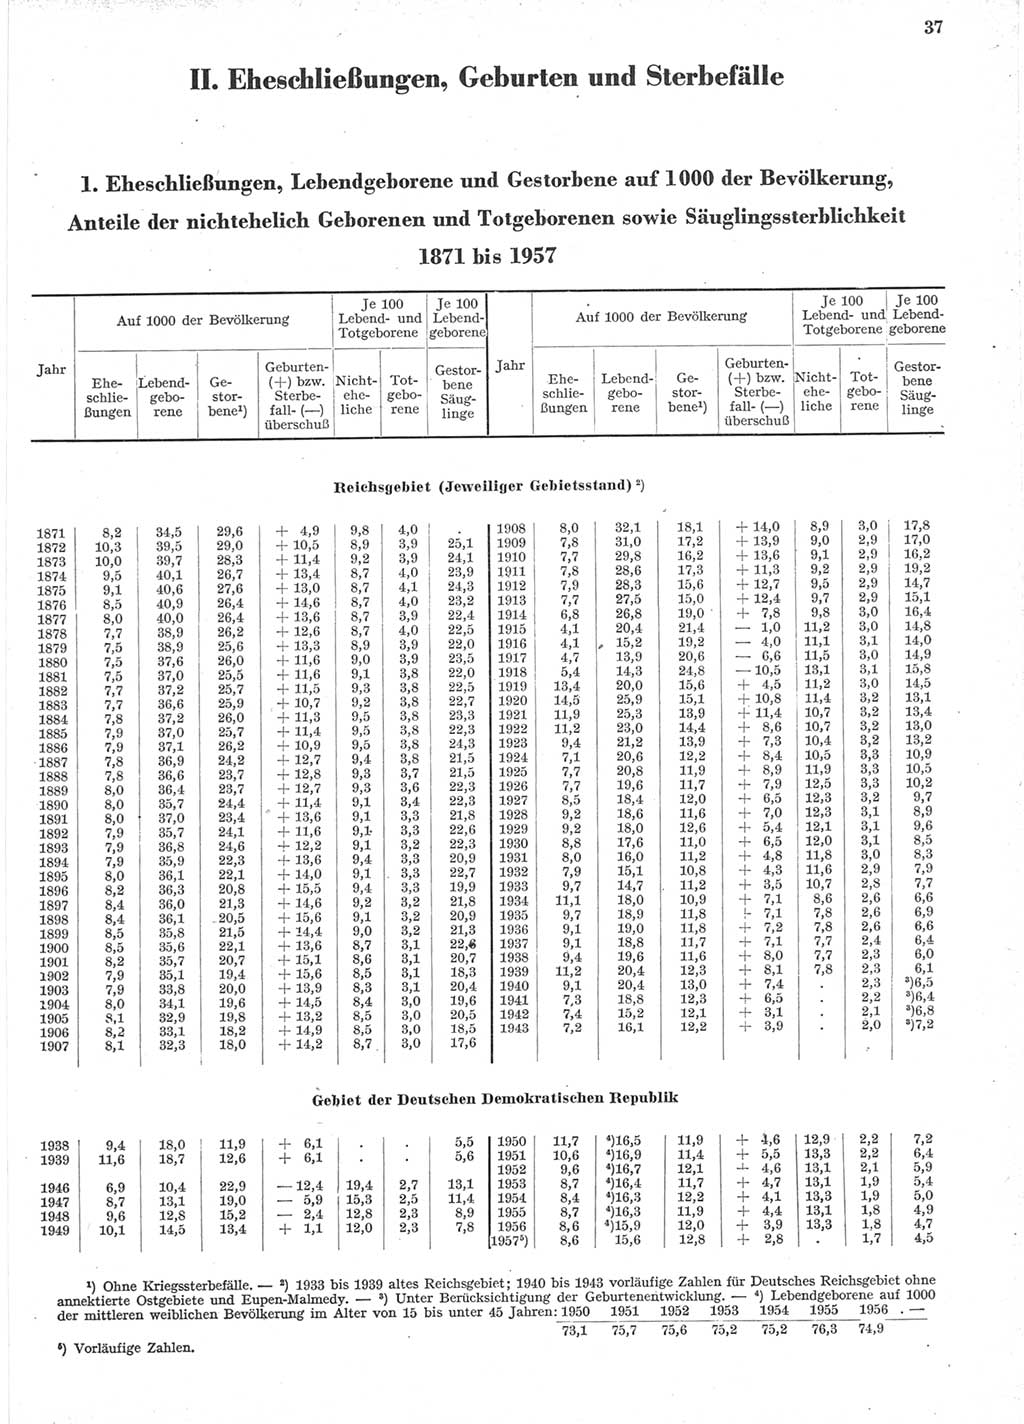 Statistisches Jahrbuch der Deutschen Demokratischen Republik (DDR) 1957, Seite 37 (Stat. Jb. DDR 1957, S. 37)